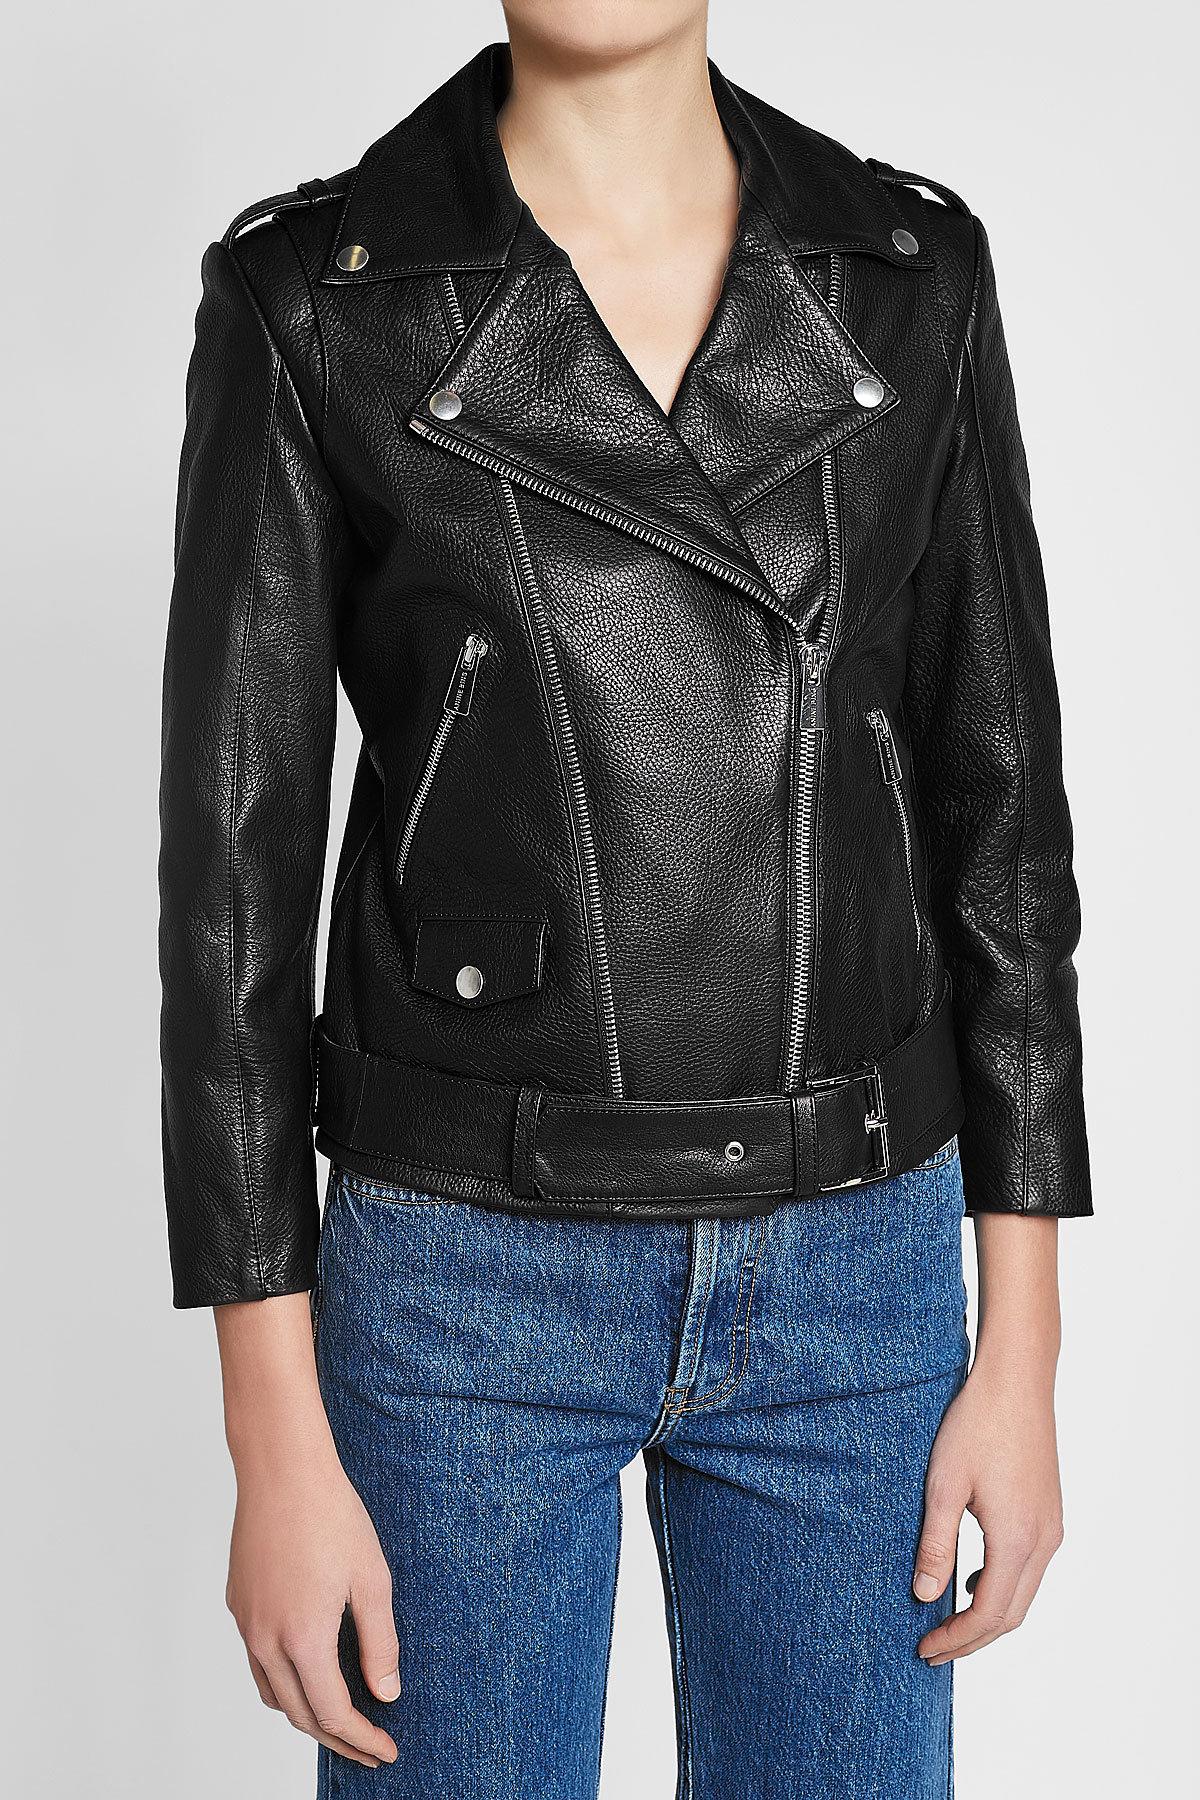 Anine Bing Leather Biker Jacket in Black - Lyst